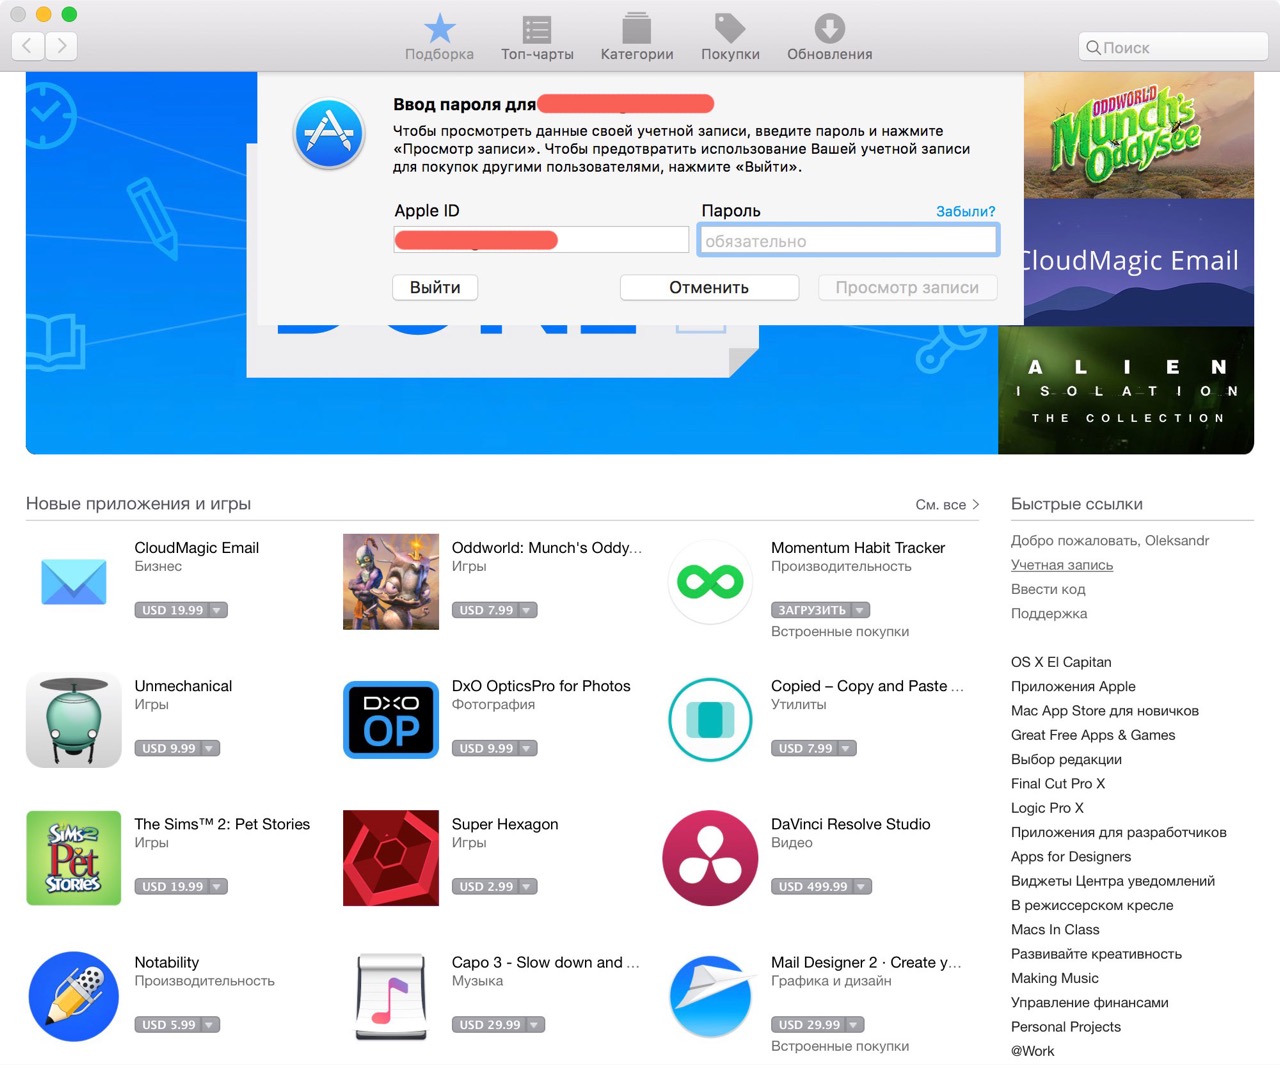 Окно авторизации в Mac App Store на Mac